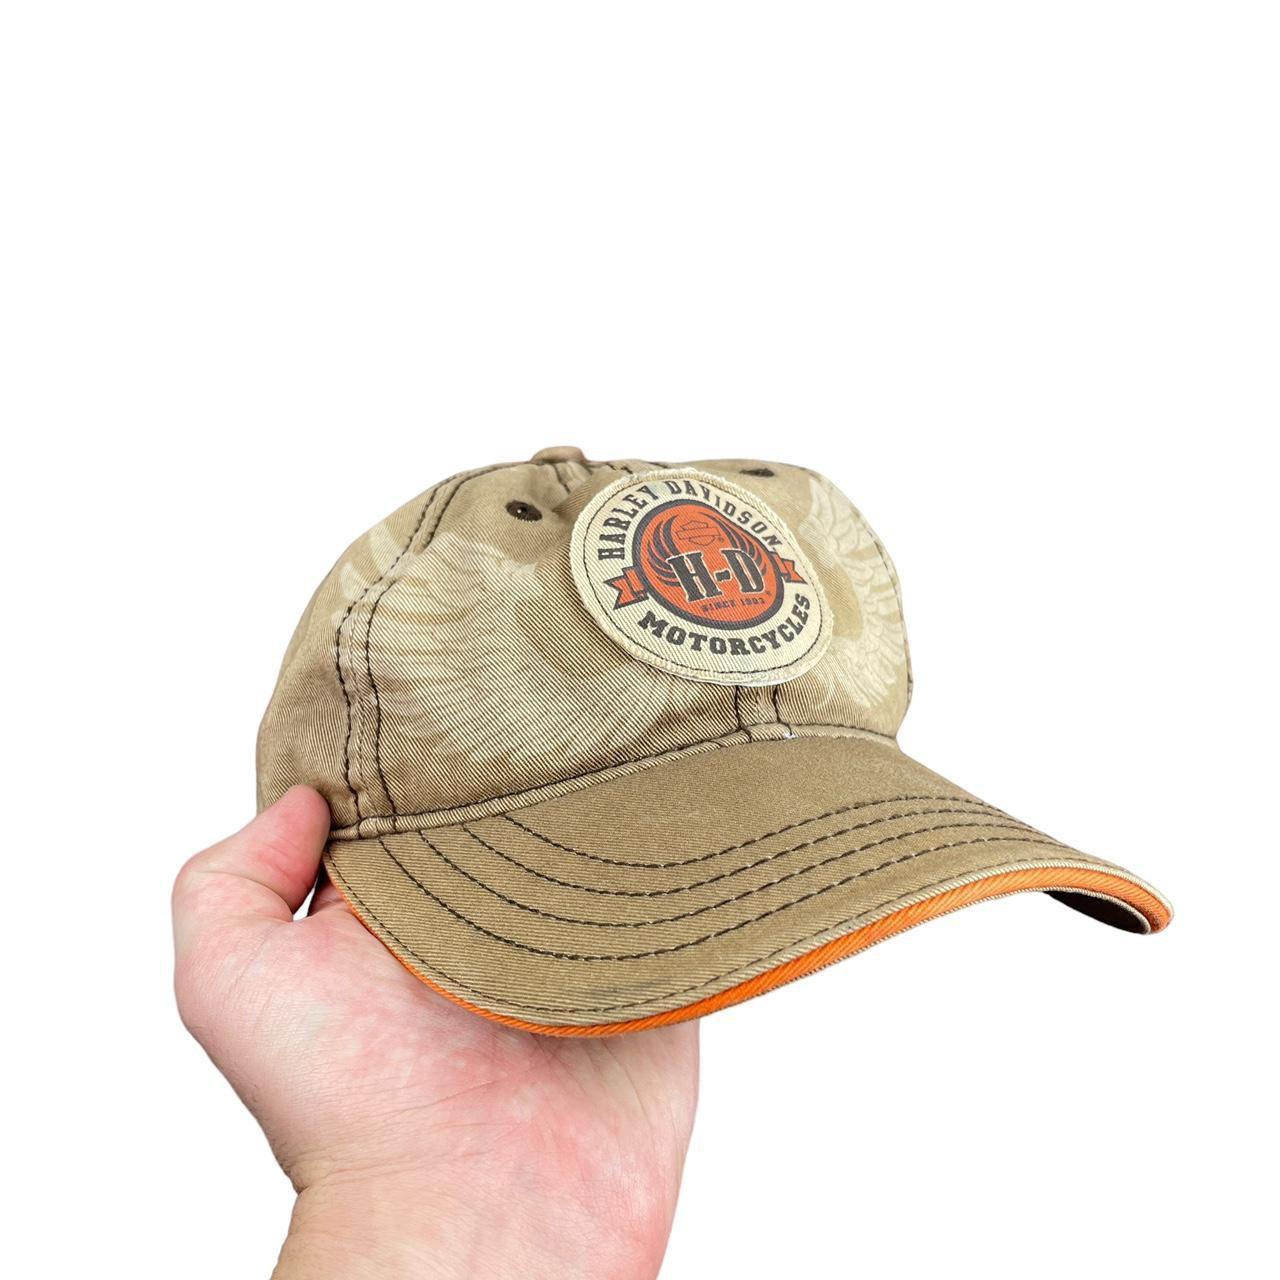 Vintage harley davidson hat -has an eagle patch on - Depop